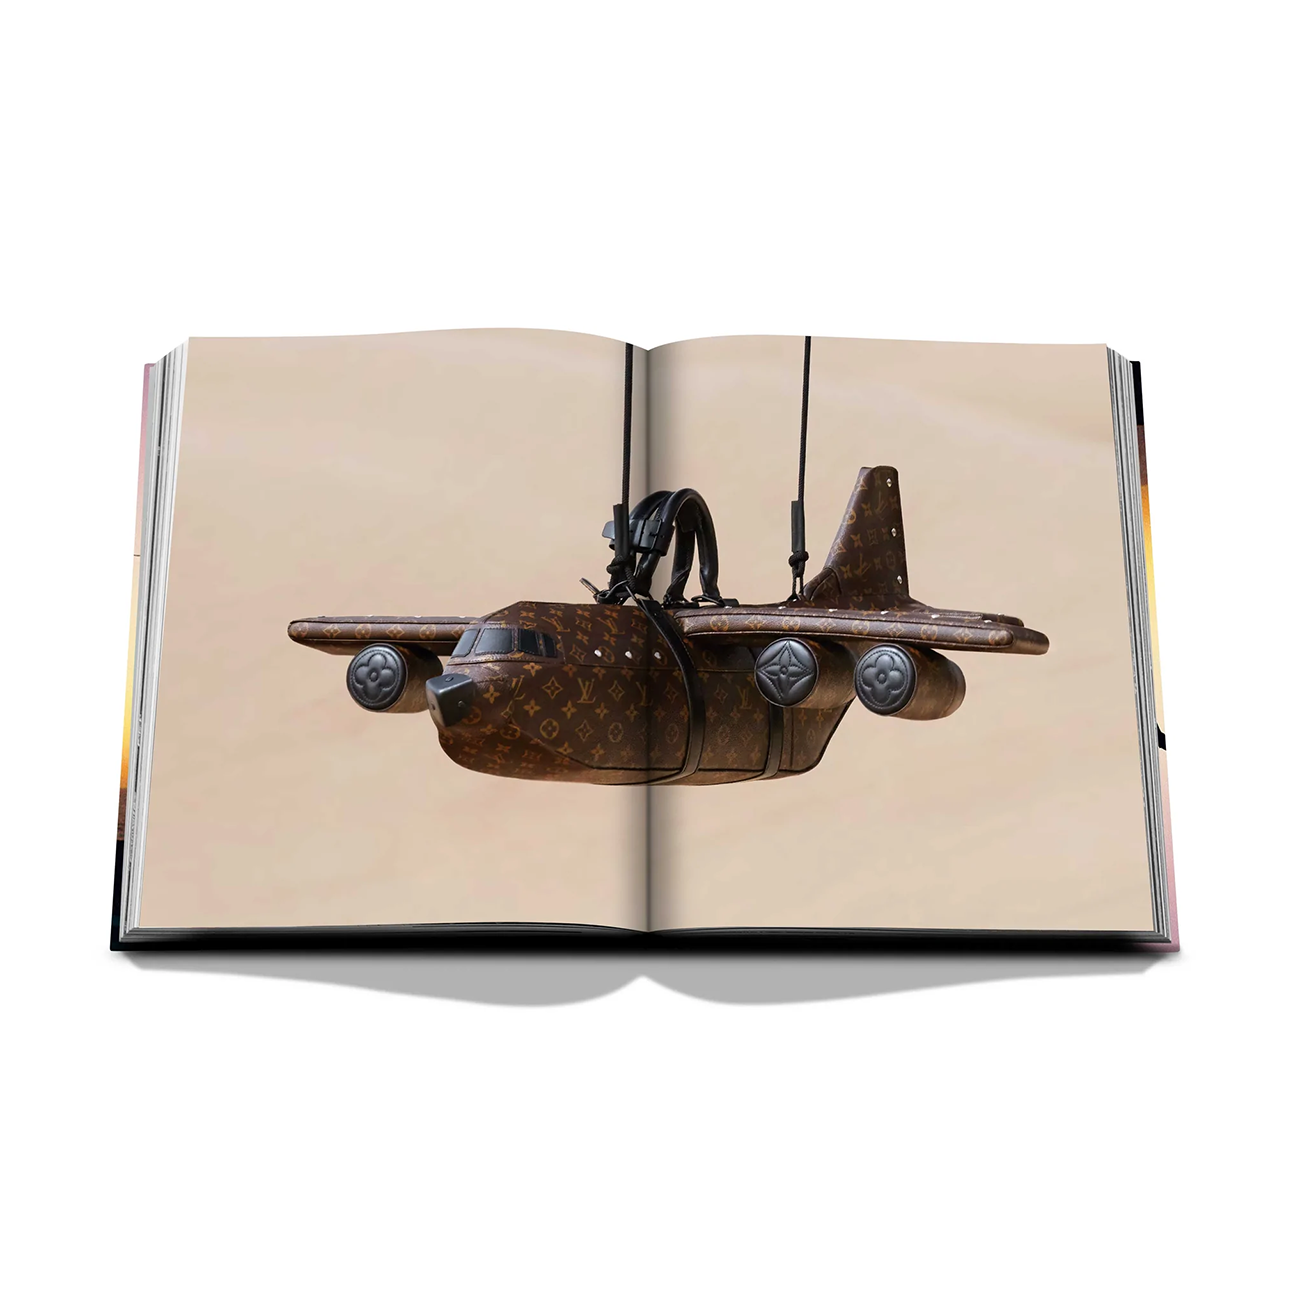 Assouline Louis Vuitton: Virgil Abloh (Ultimate Edition) Hardcover Book -  Shop - bhibu